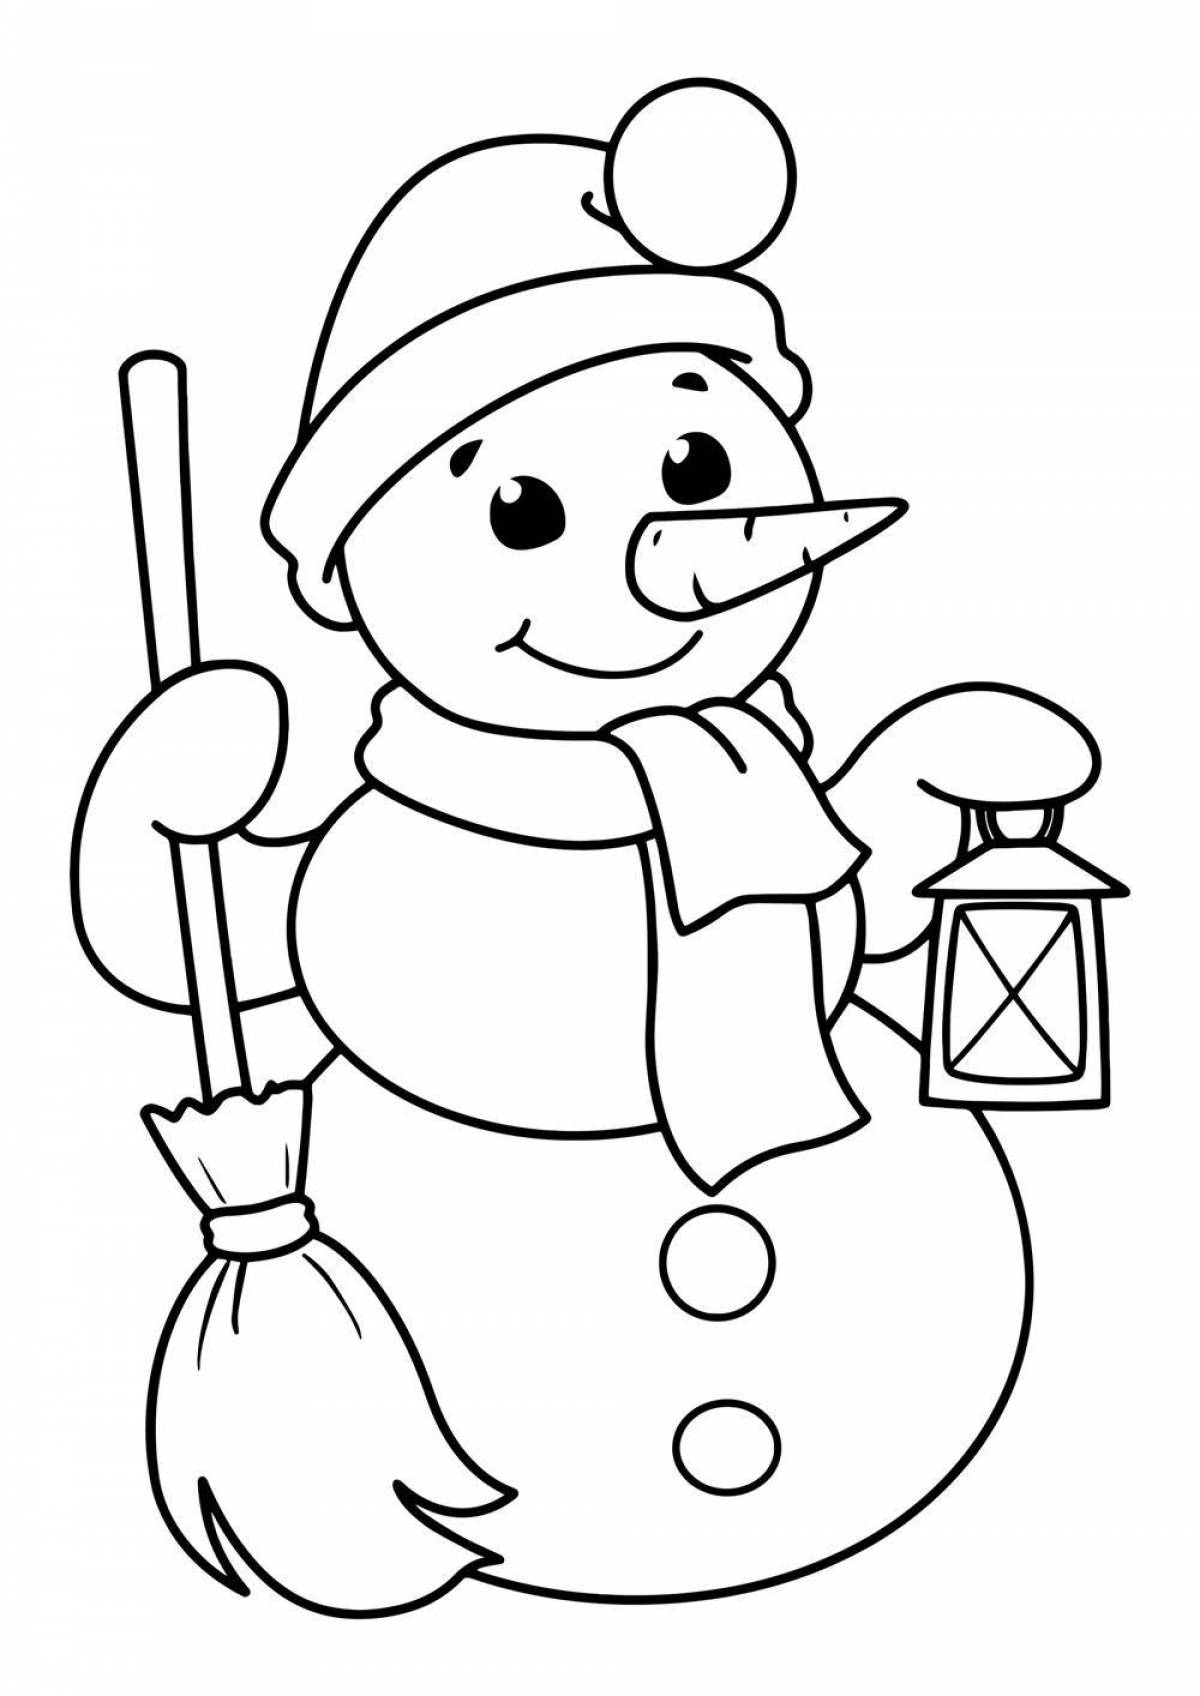 Раскраска для детей снеговик